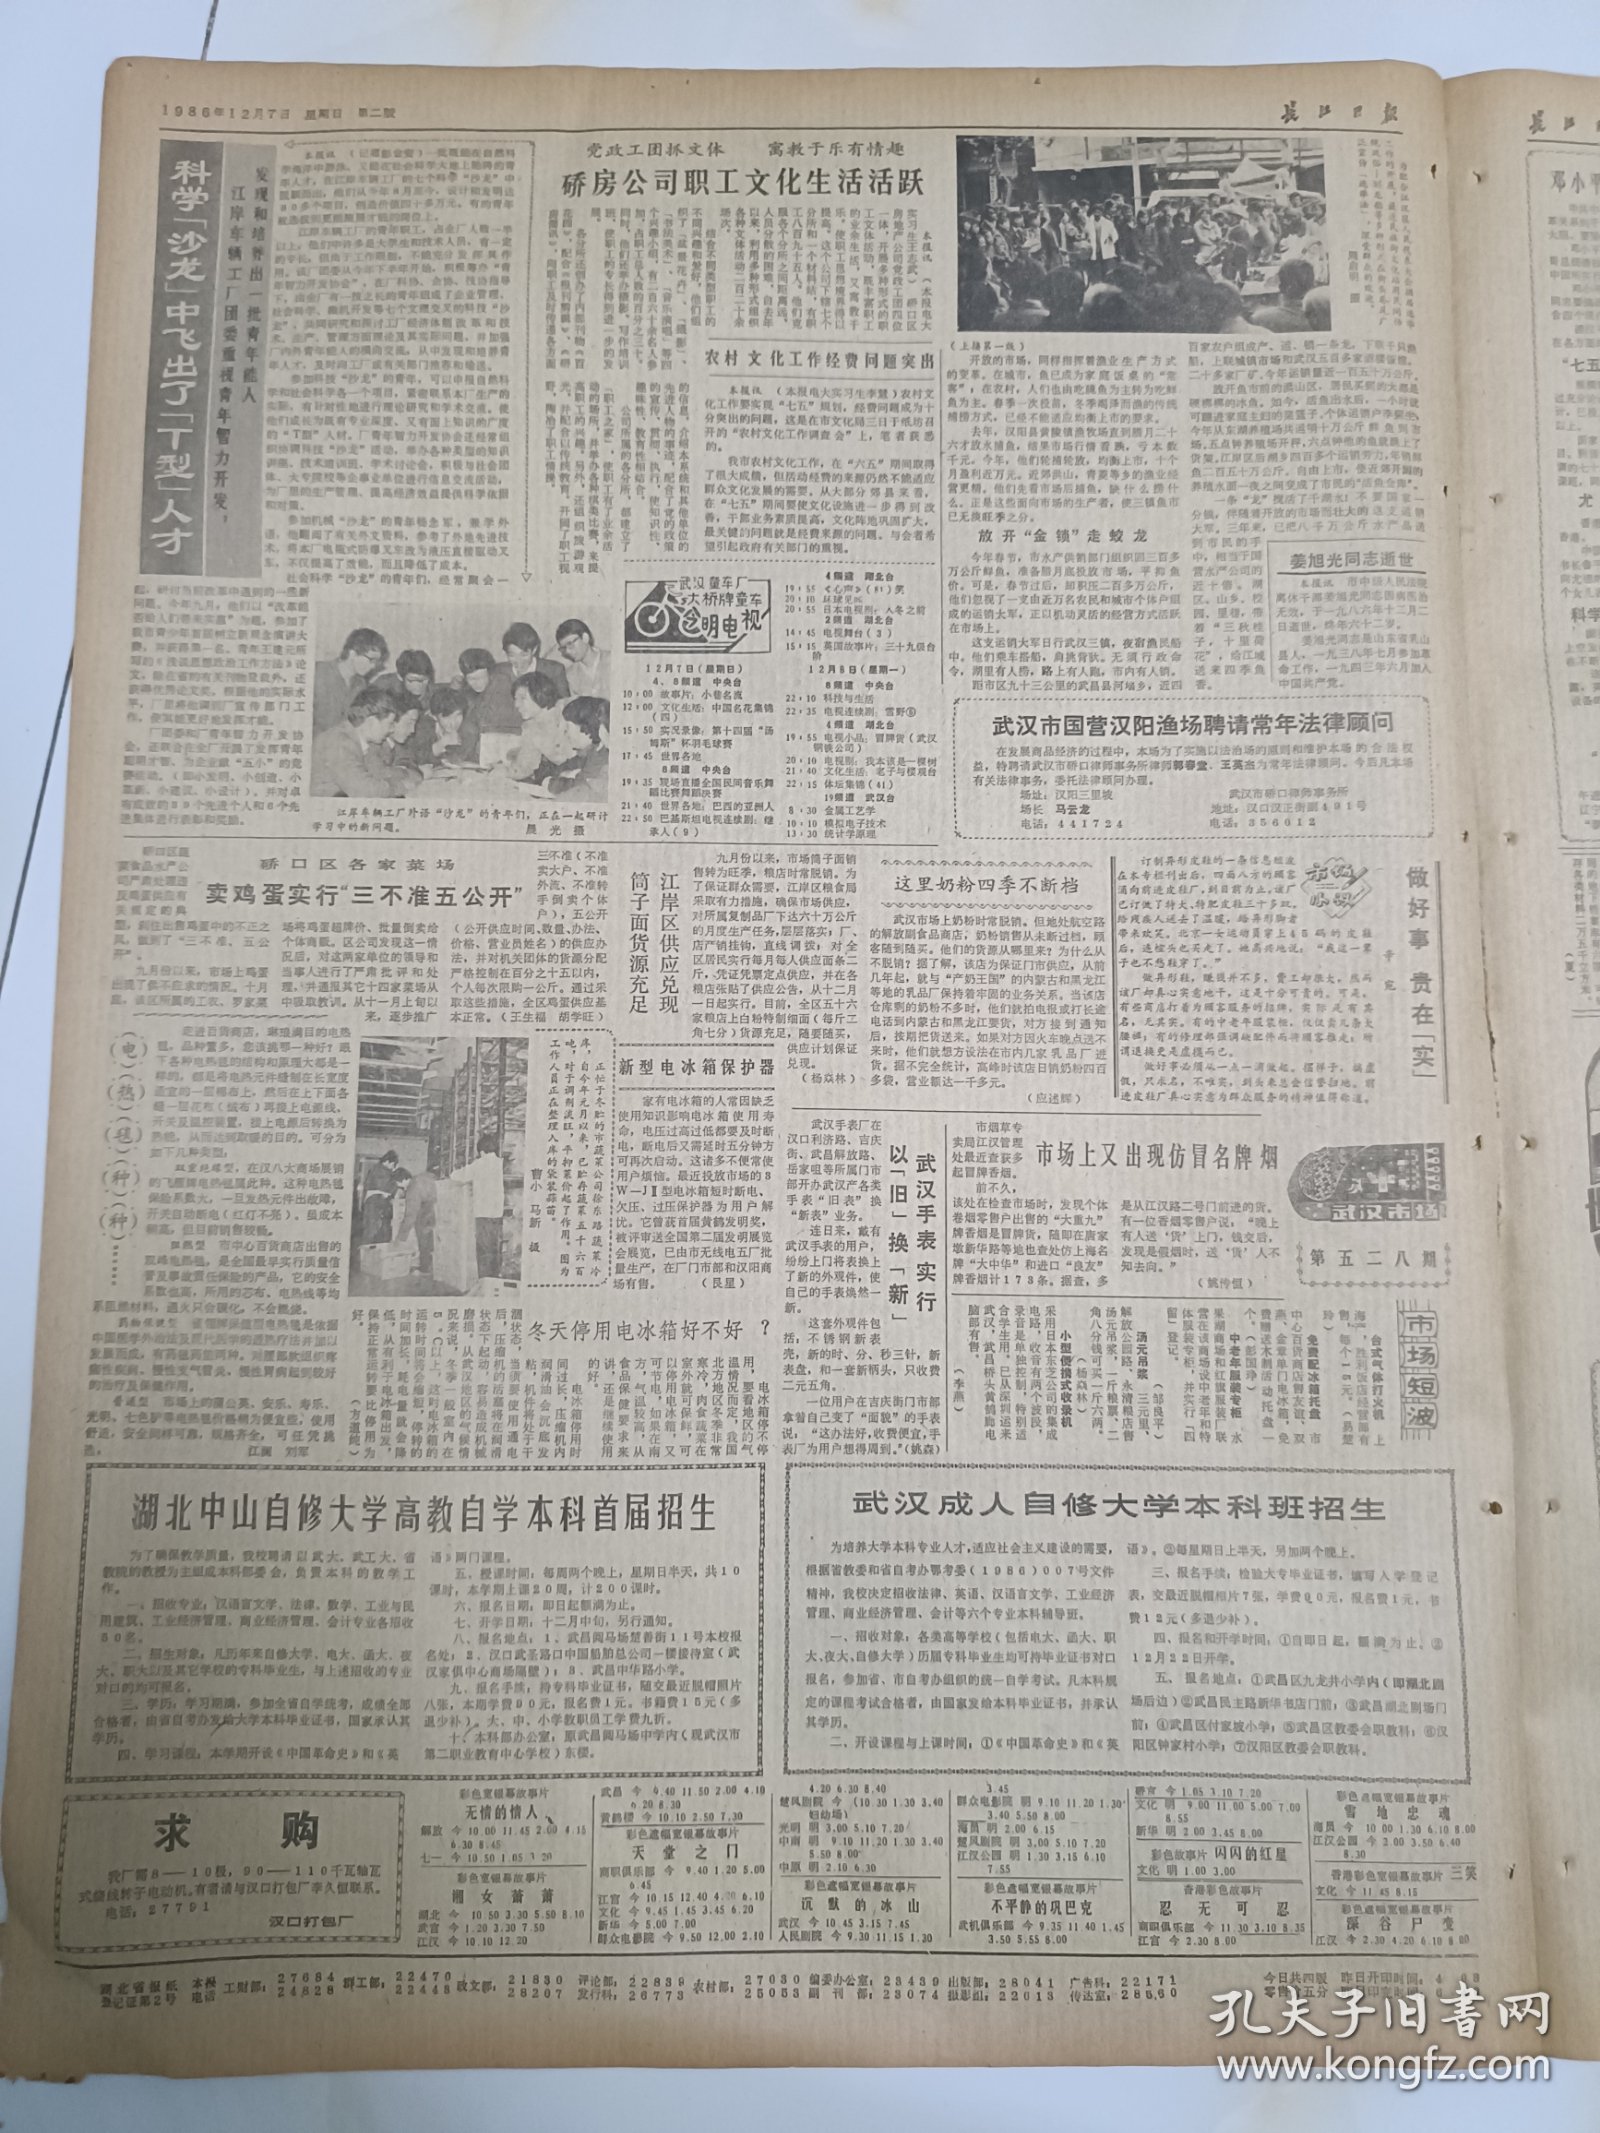 长江日报1986年12月7日，武汉解决吃鱼难纪事。武昌县结合农村村级整党抓观念更新。张学良将军在西安的官邸修复开放。